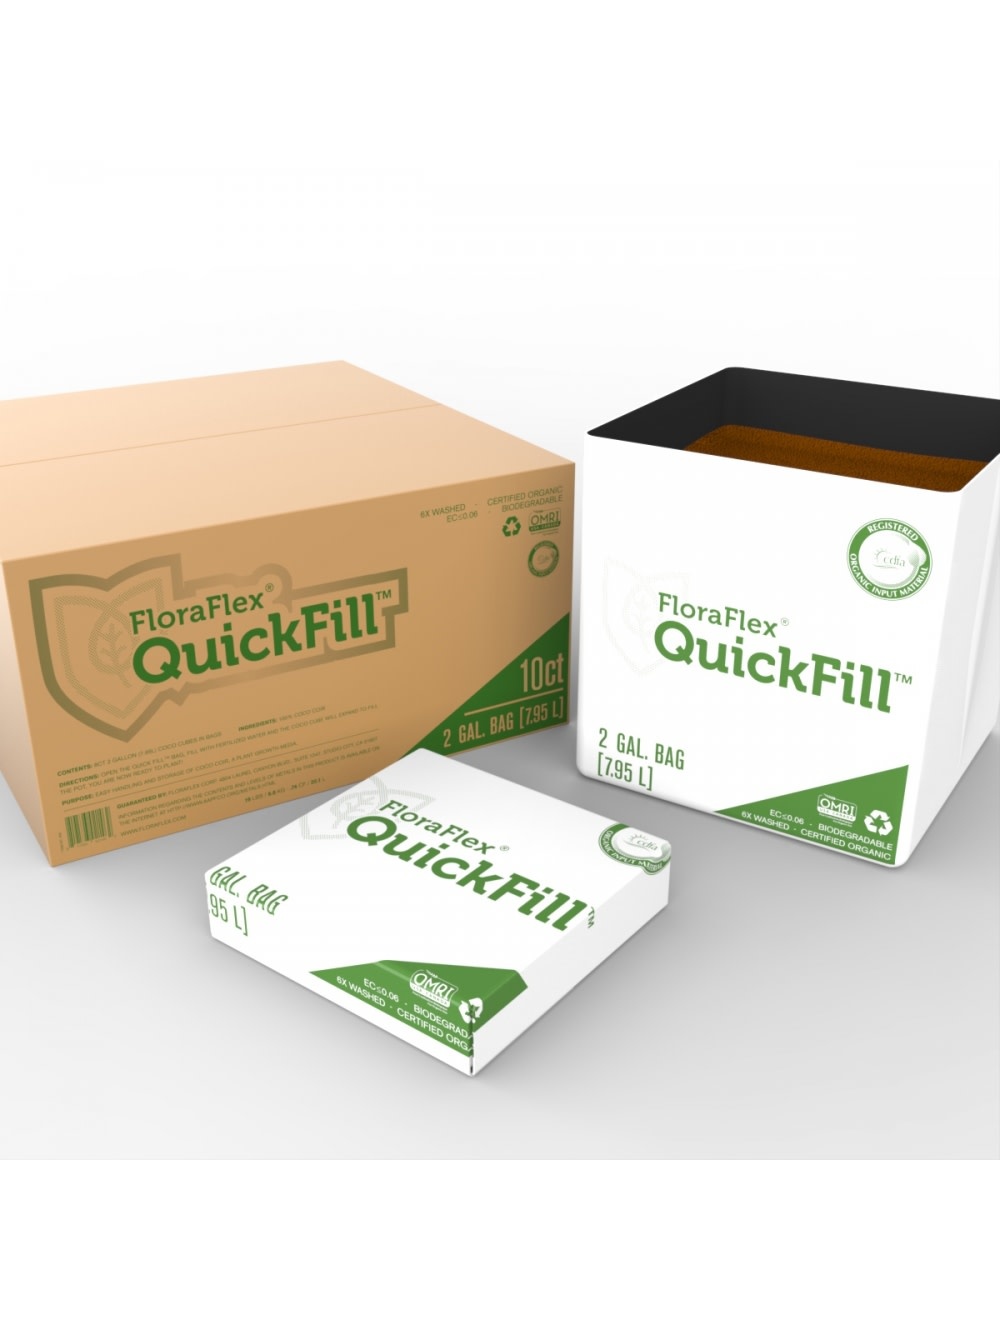 Floraflex Quickfill Bags 2gal